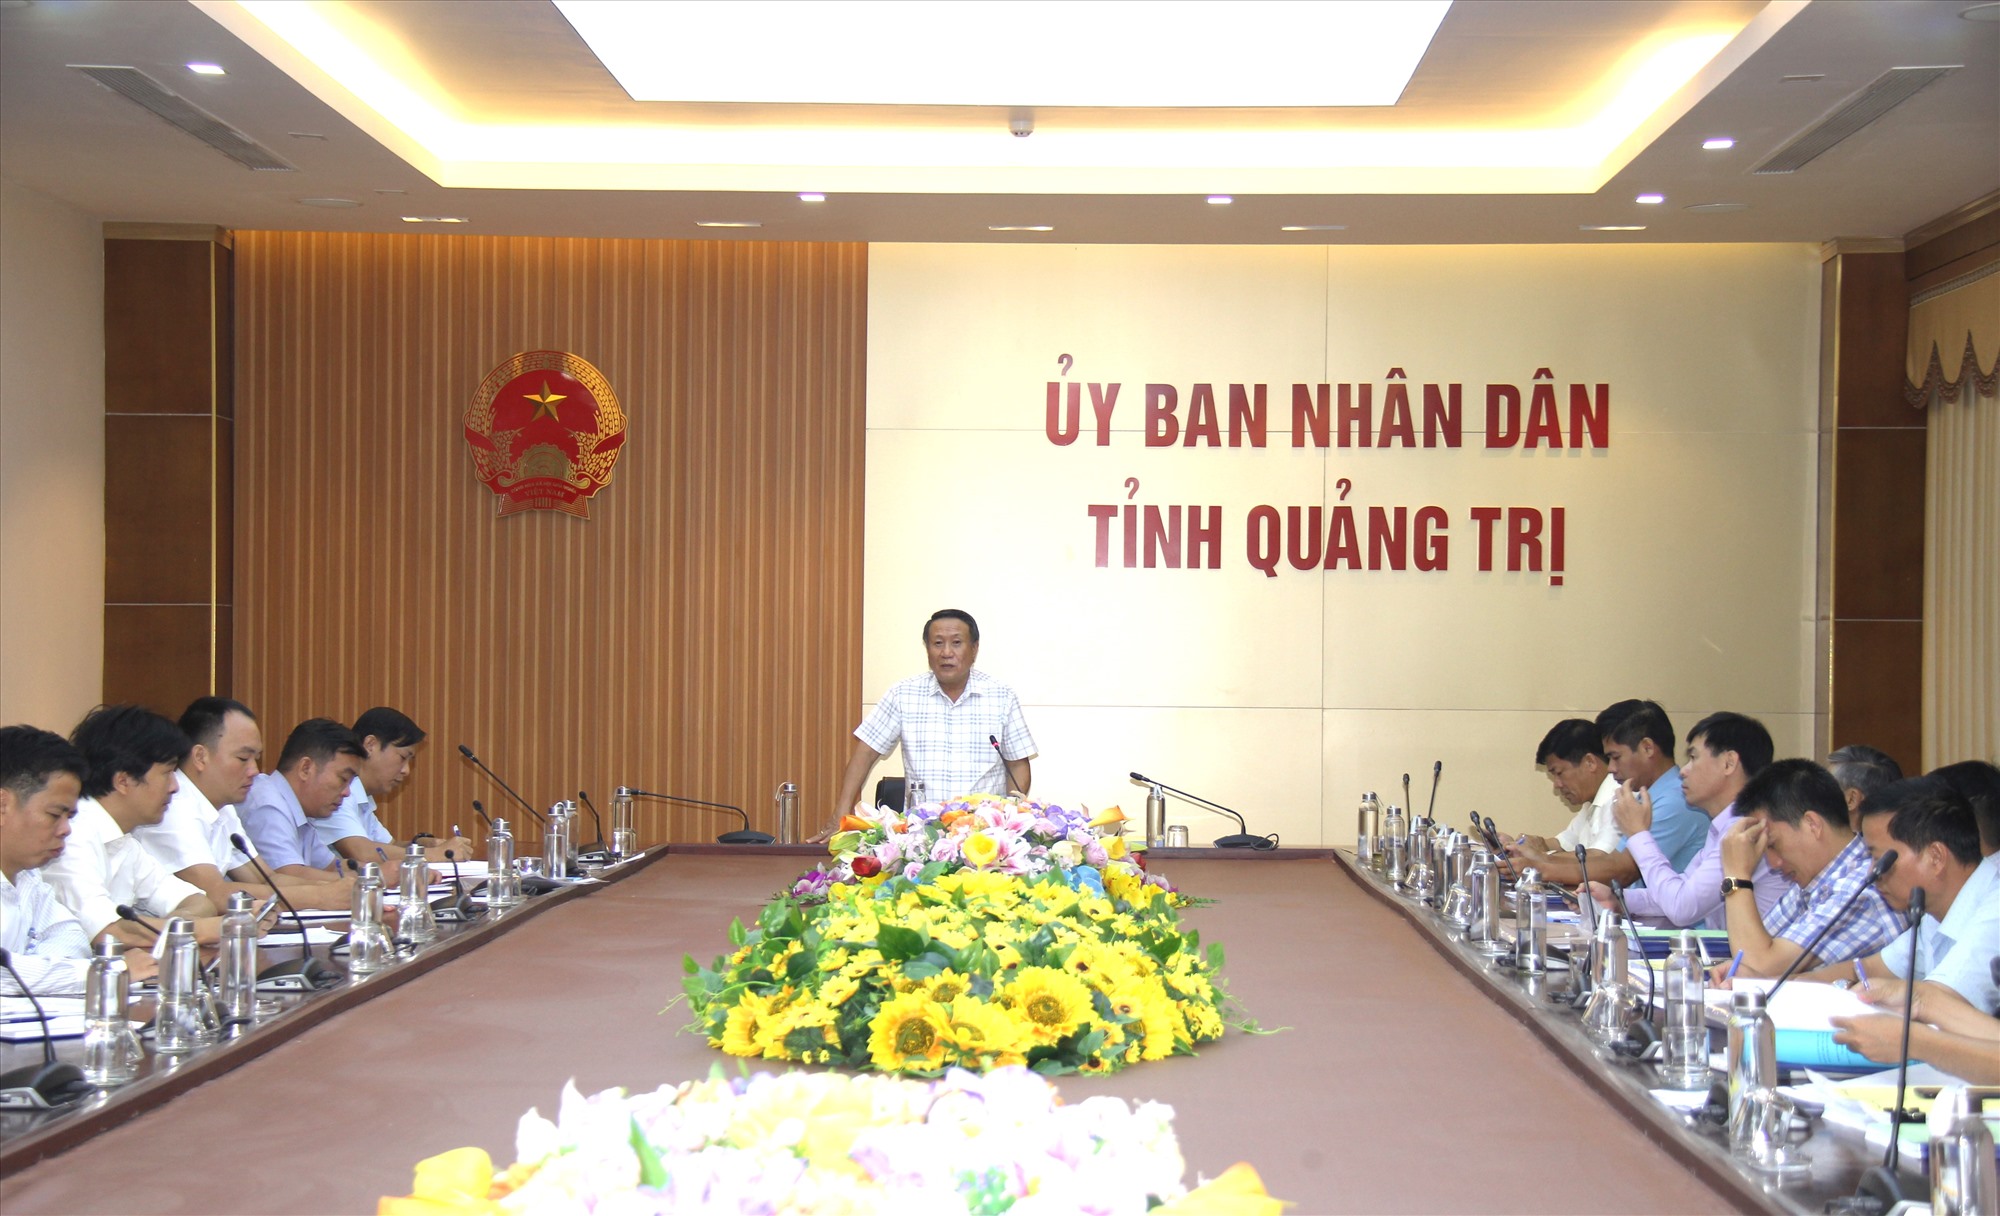 Phó Chủ tịch Thường trực UBND tỉnh Hà Sỹ Đồng phát biểu tại cuộc họp- Ảnh: H.A